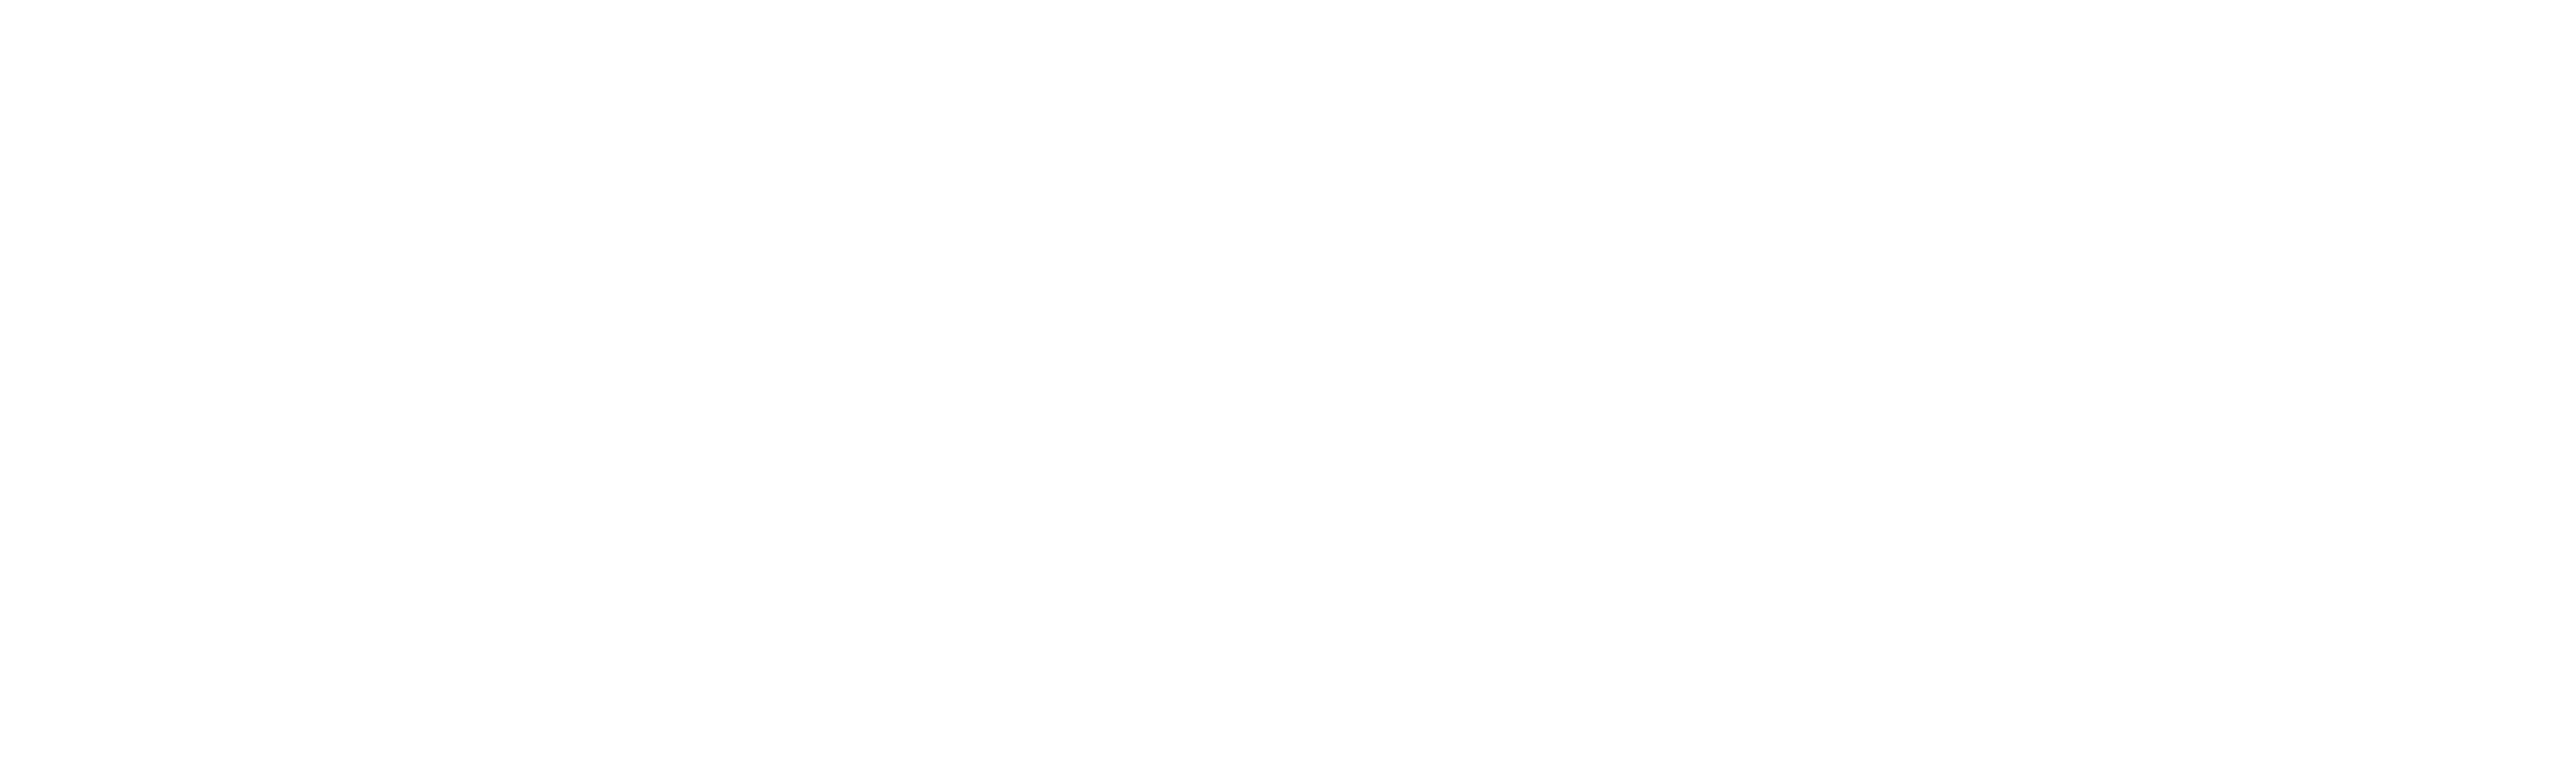 Camping Hire Logo-02